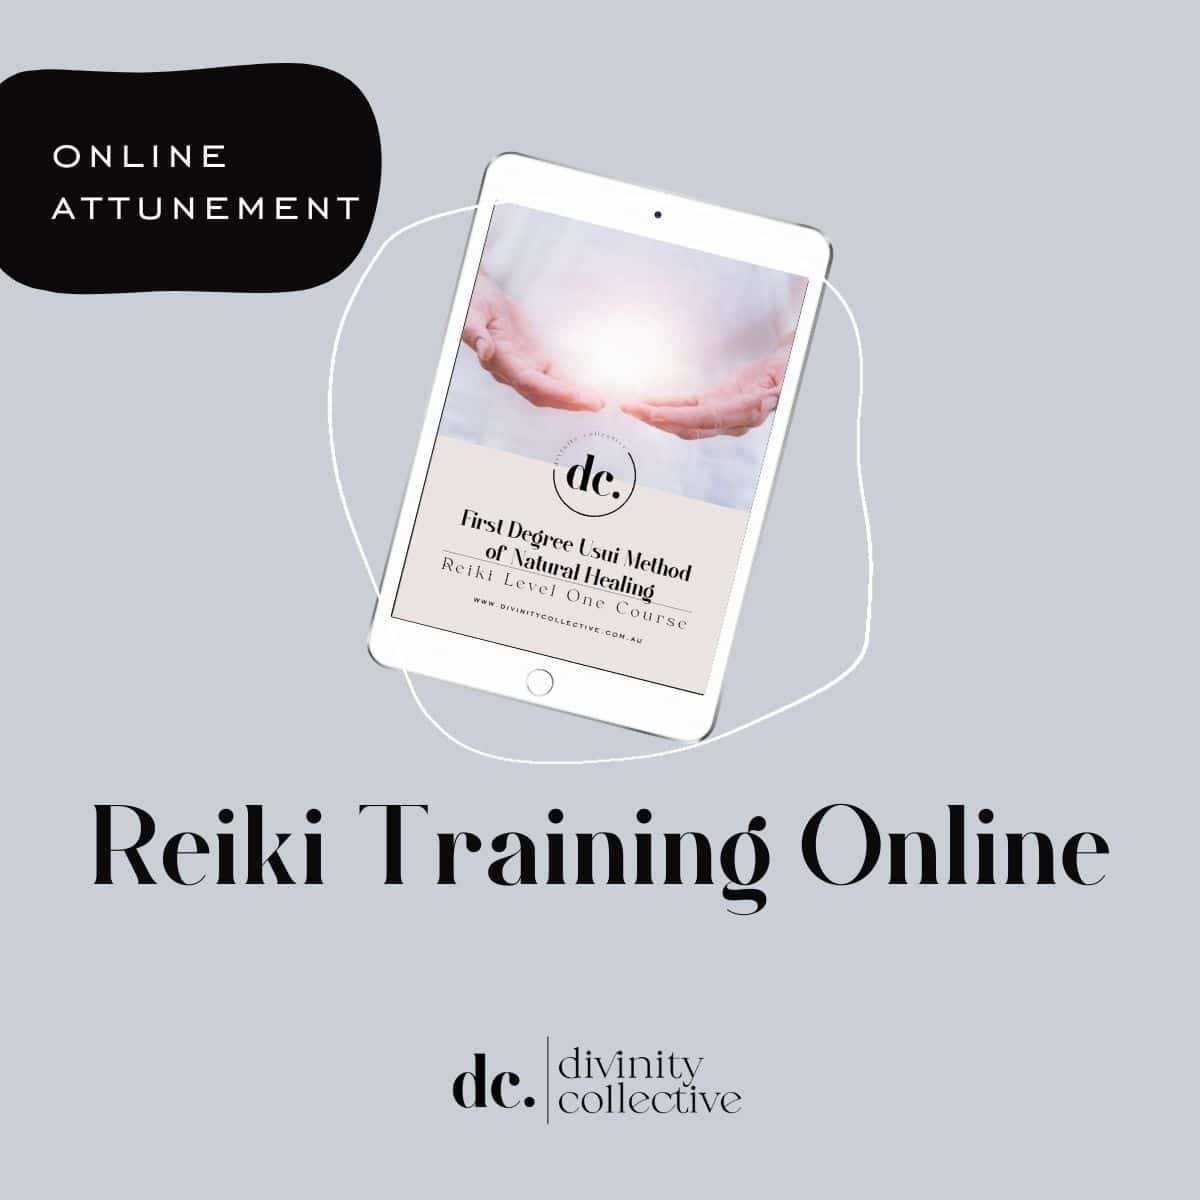 Reiki Training Online Attunement